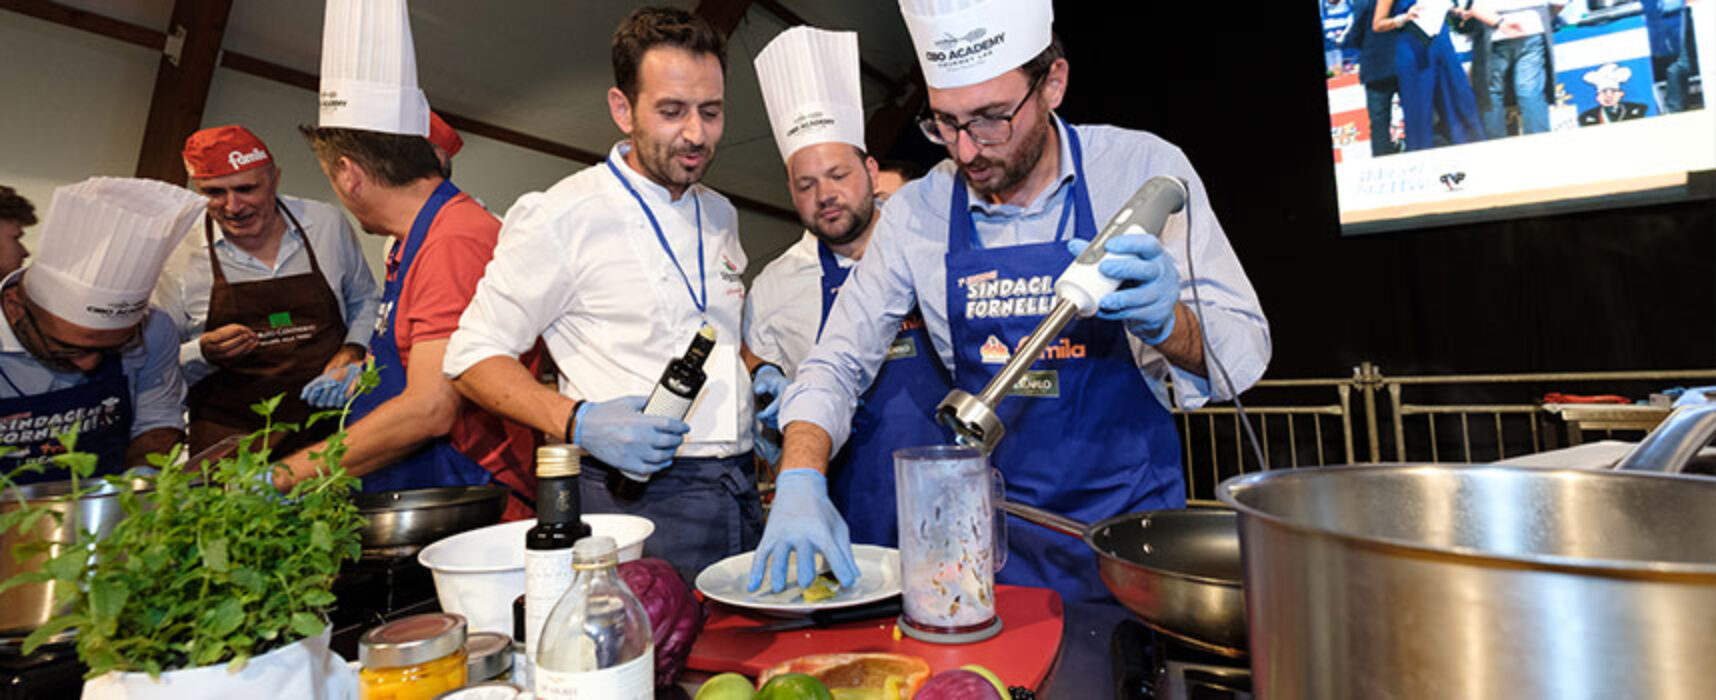 Torna “Sindaci ai fornelli!”, a Bisceglie l’evento con la sfida in cucina più originale d’Italia